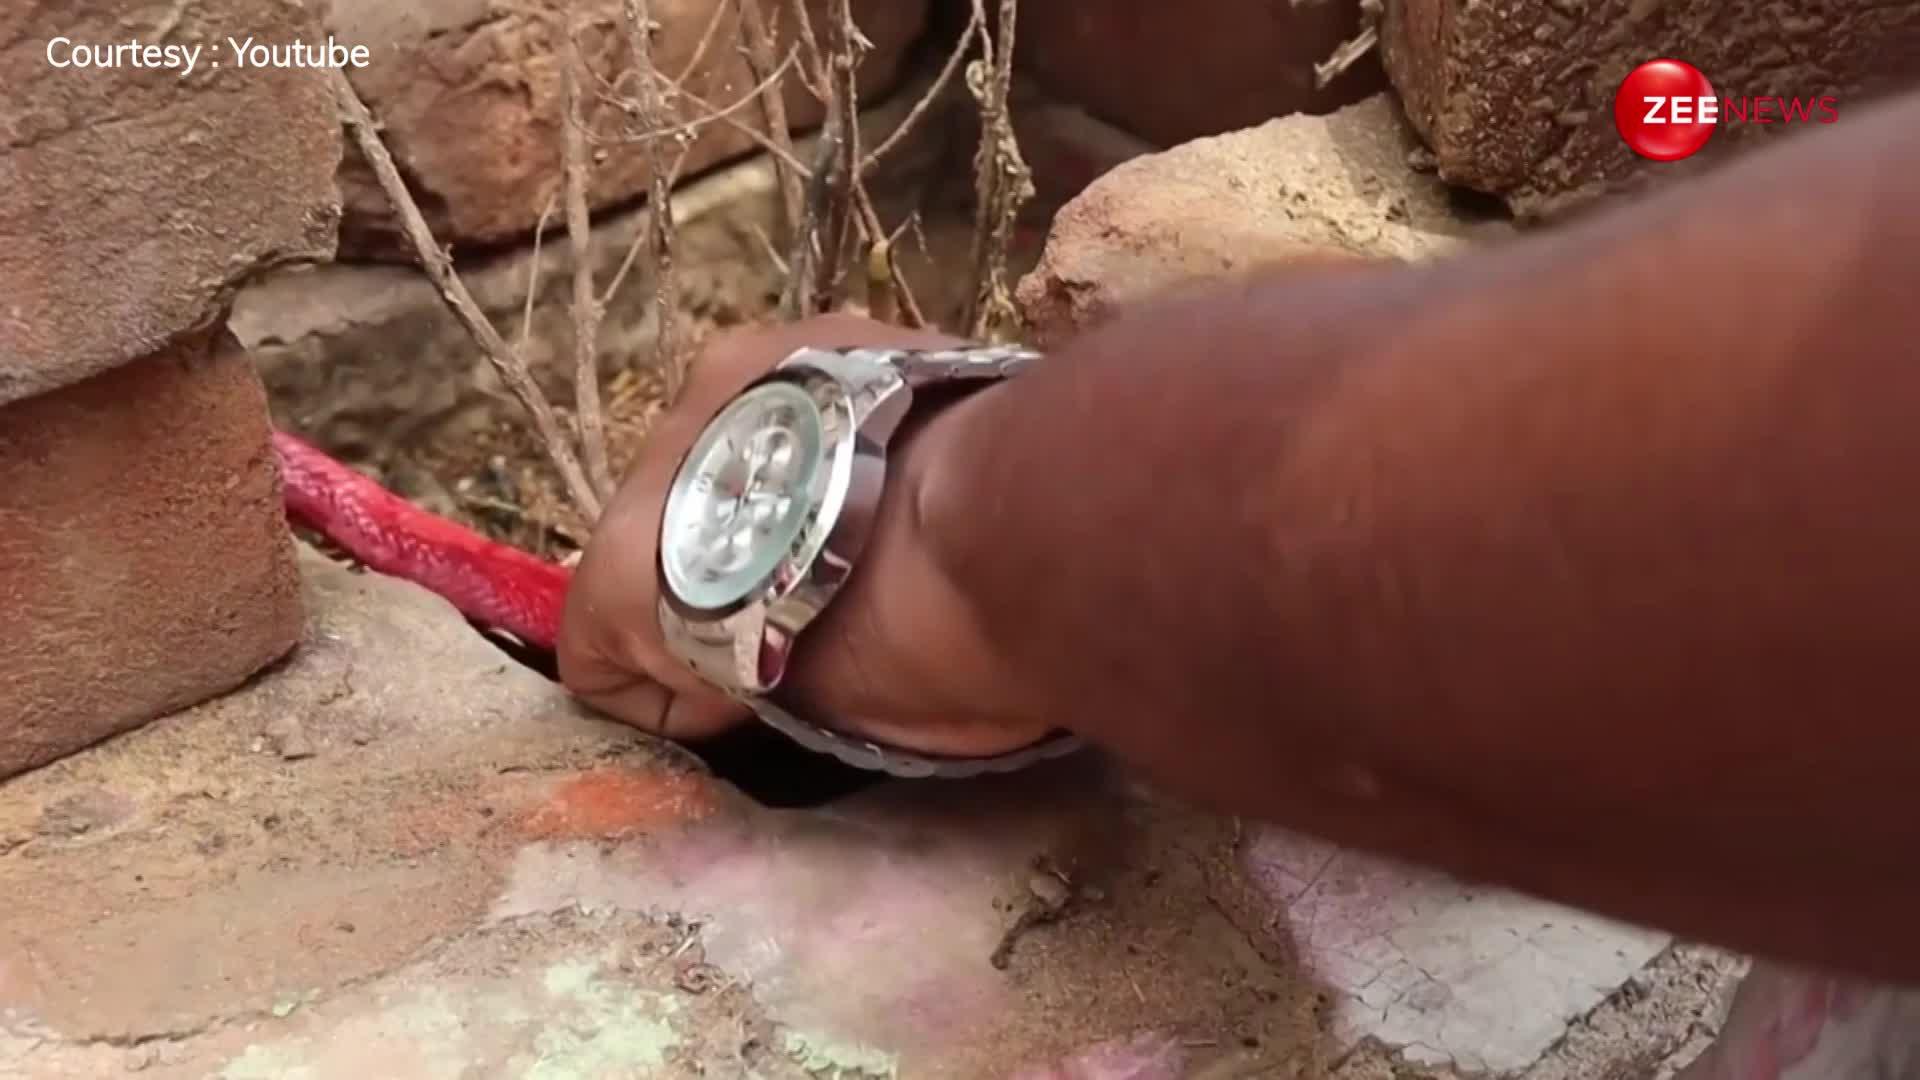 भारत में पहली बार दिखा लाल रंग का किंग कोबरा, घर की दीवार में छिपा बैठा था खतरनाक सांप